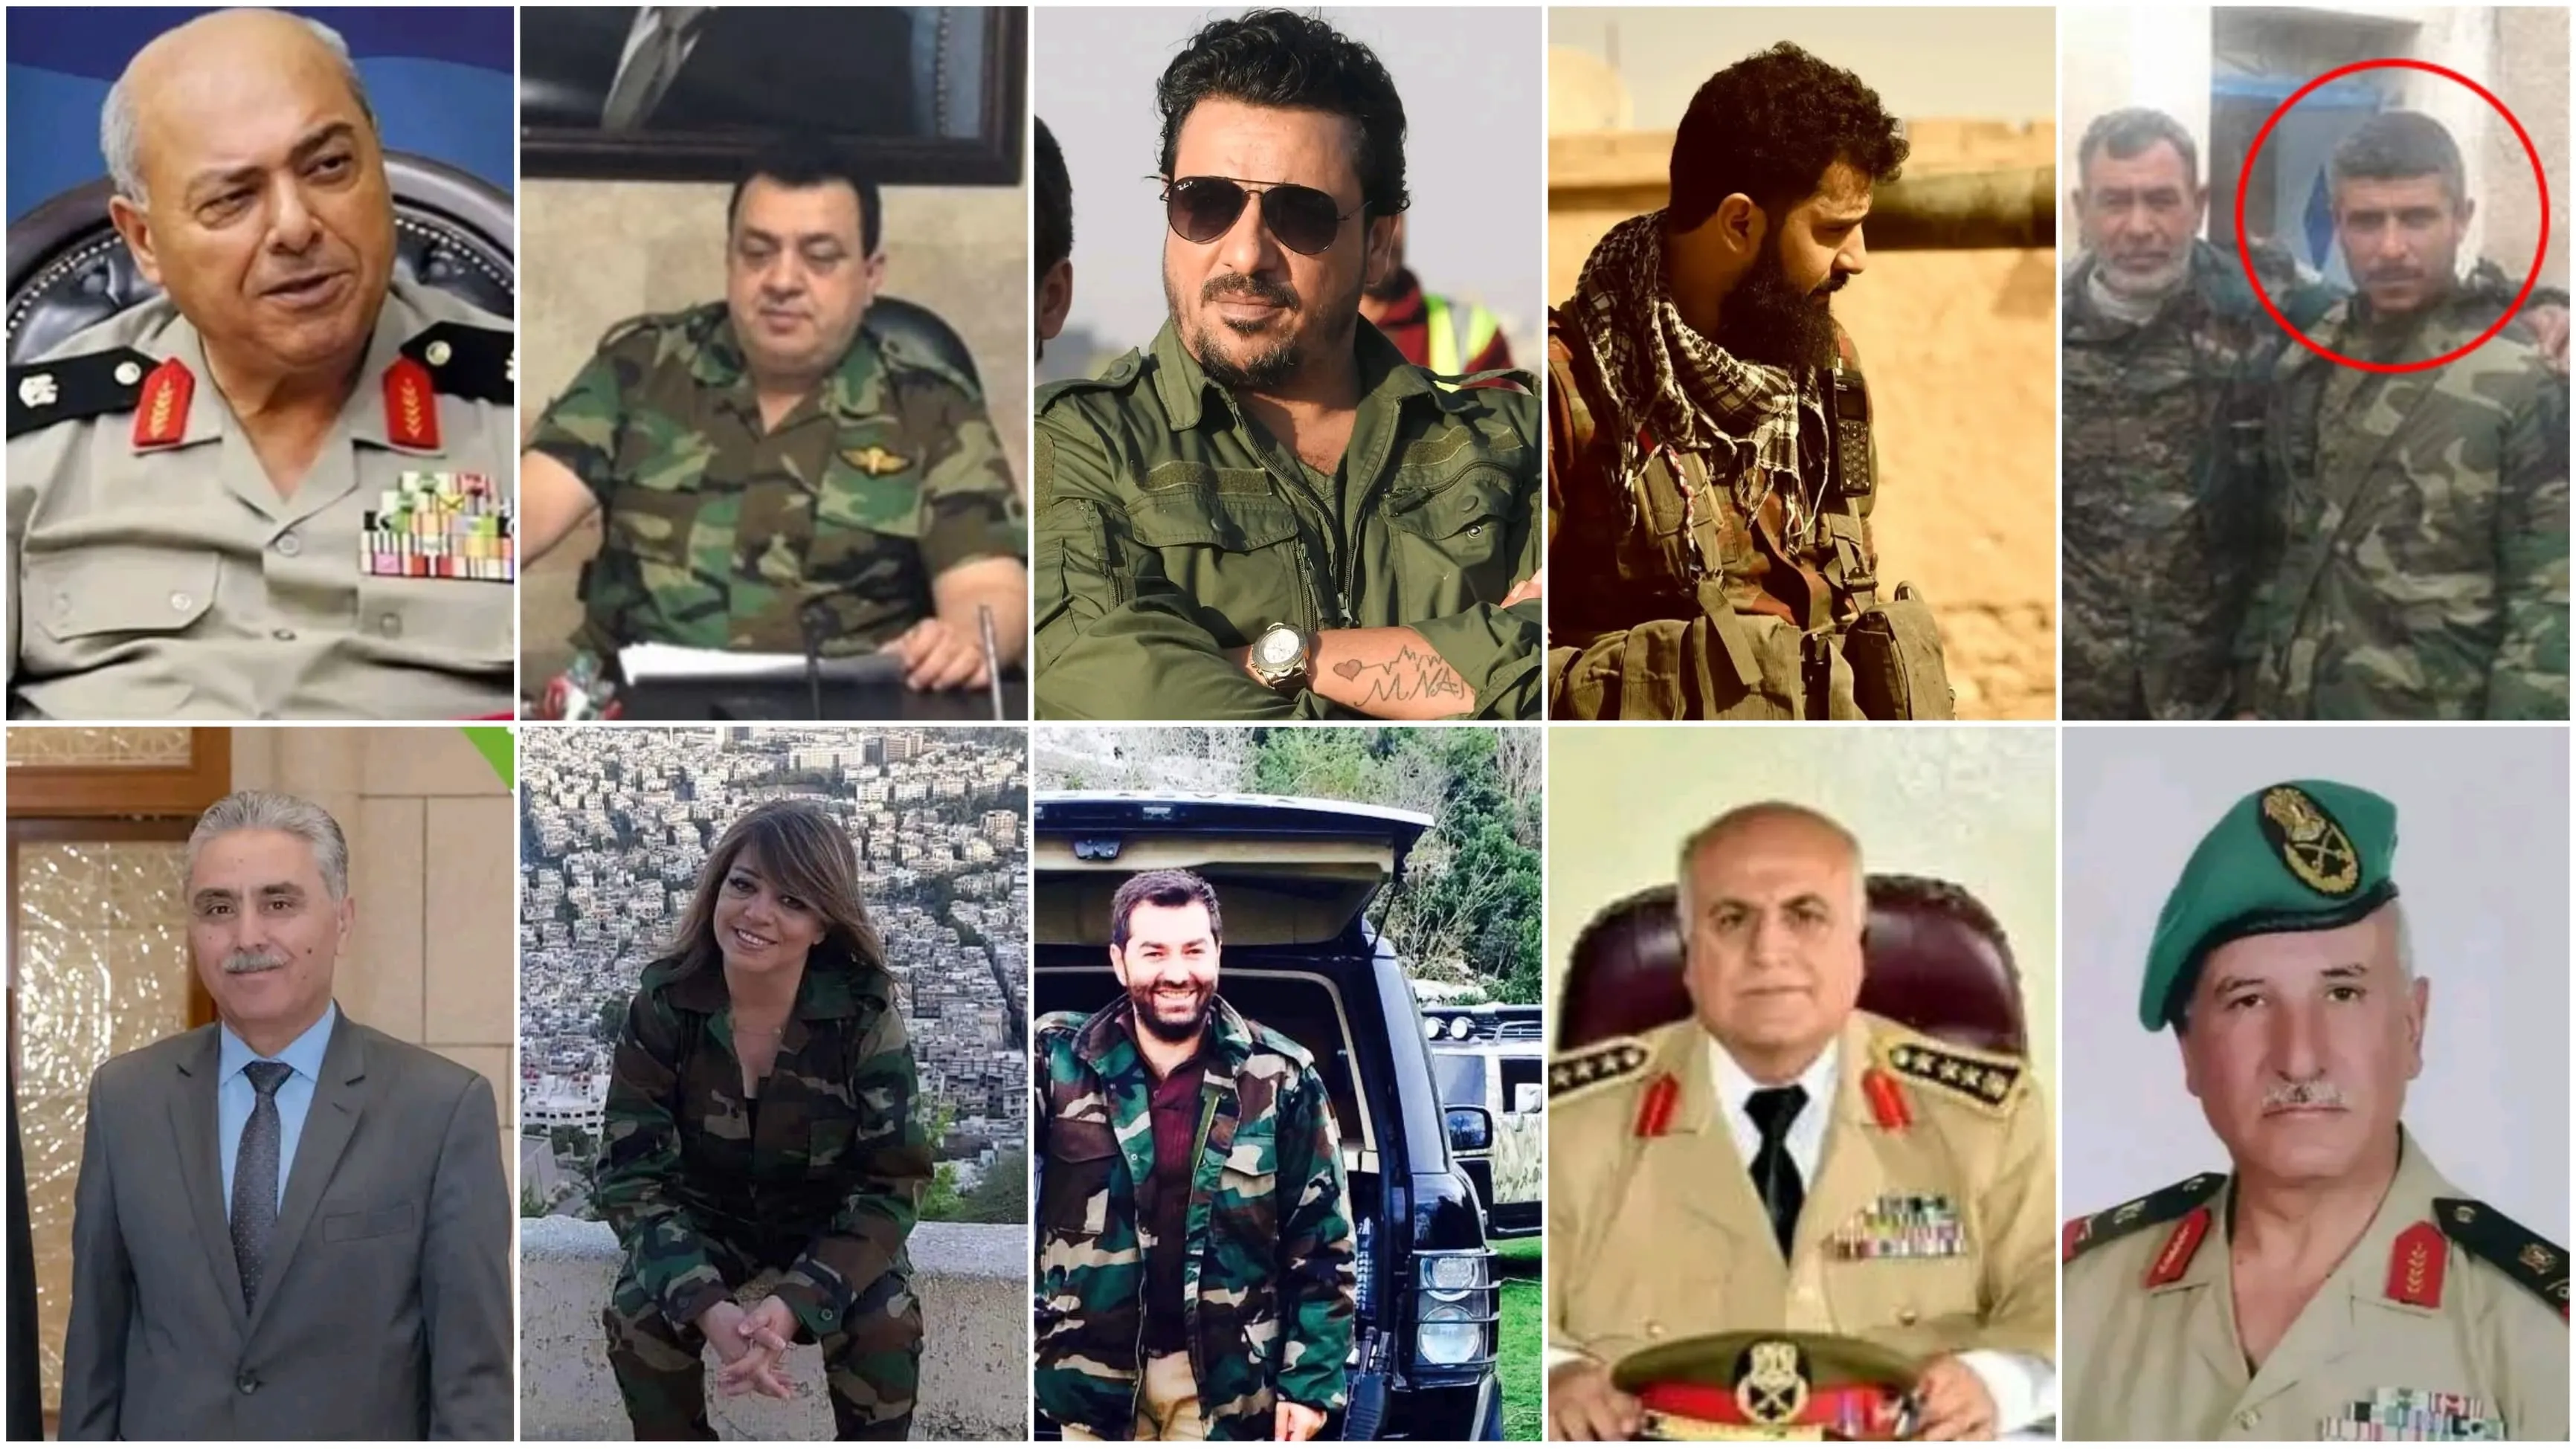 دون برامج انتخابية.. قادة ميليشيات ومجرمين مرشحين لعضوية برلمان الأسد